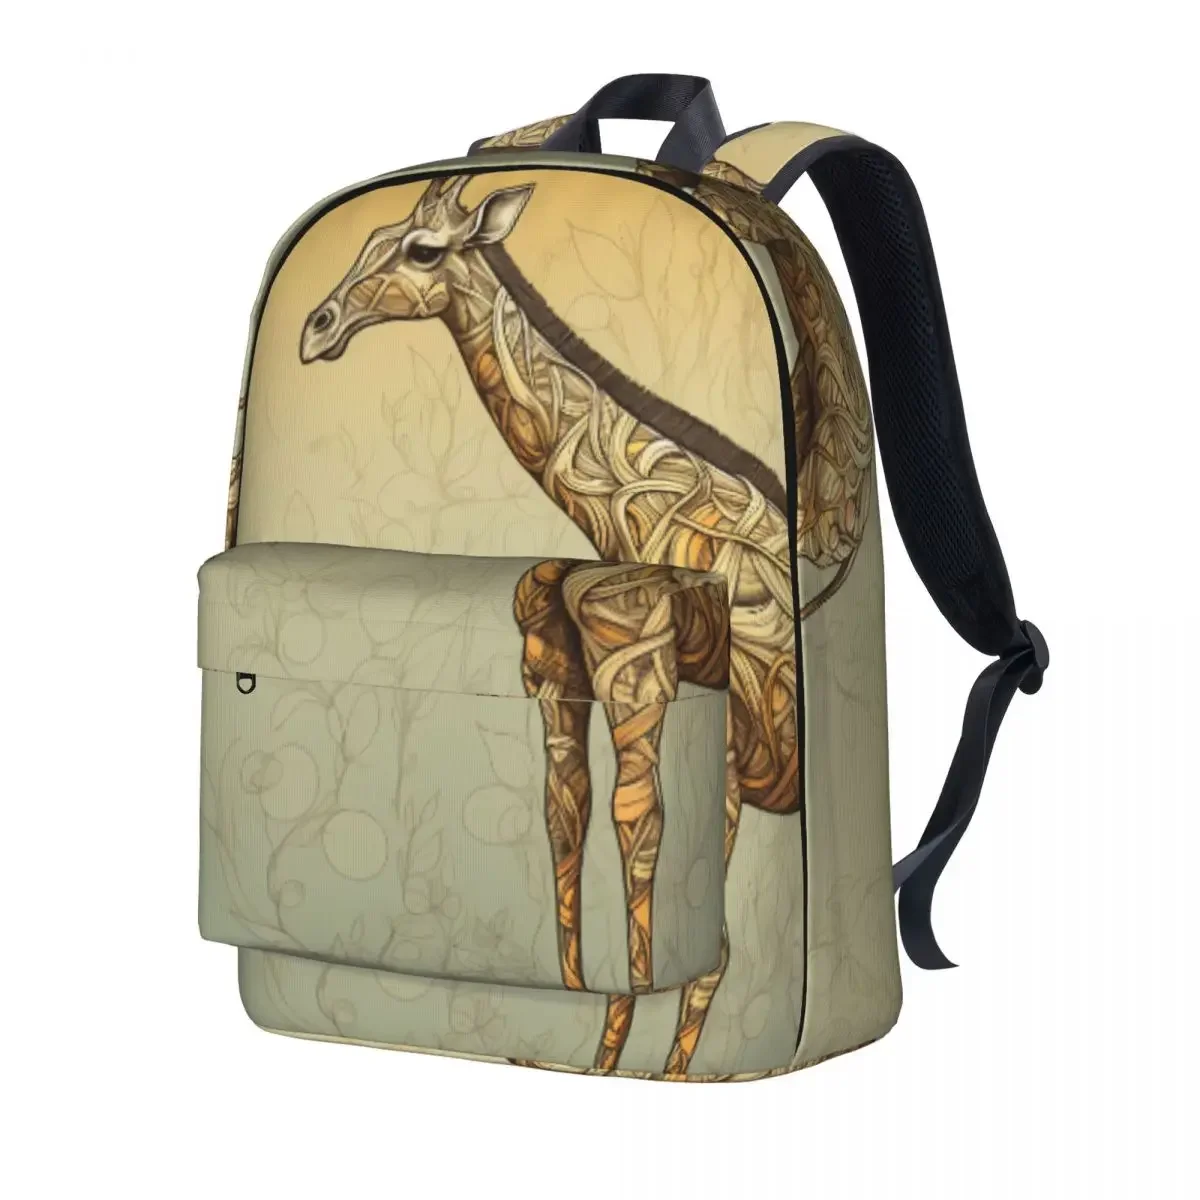 

Рюкзак с изображением жирафа мультфильм мальчик девочка полиэстер Велоспорт рюкзаки большие стильные школьные сумки рюкзак